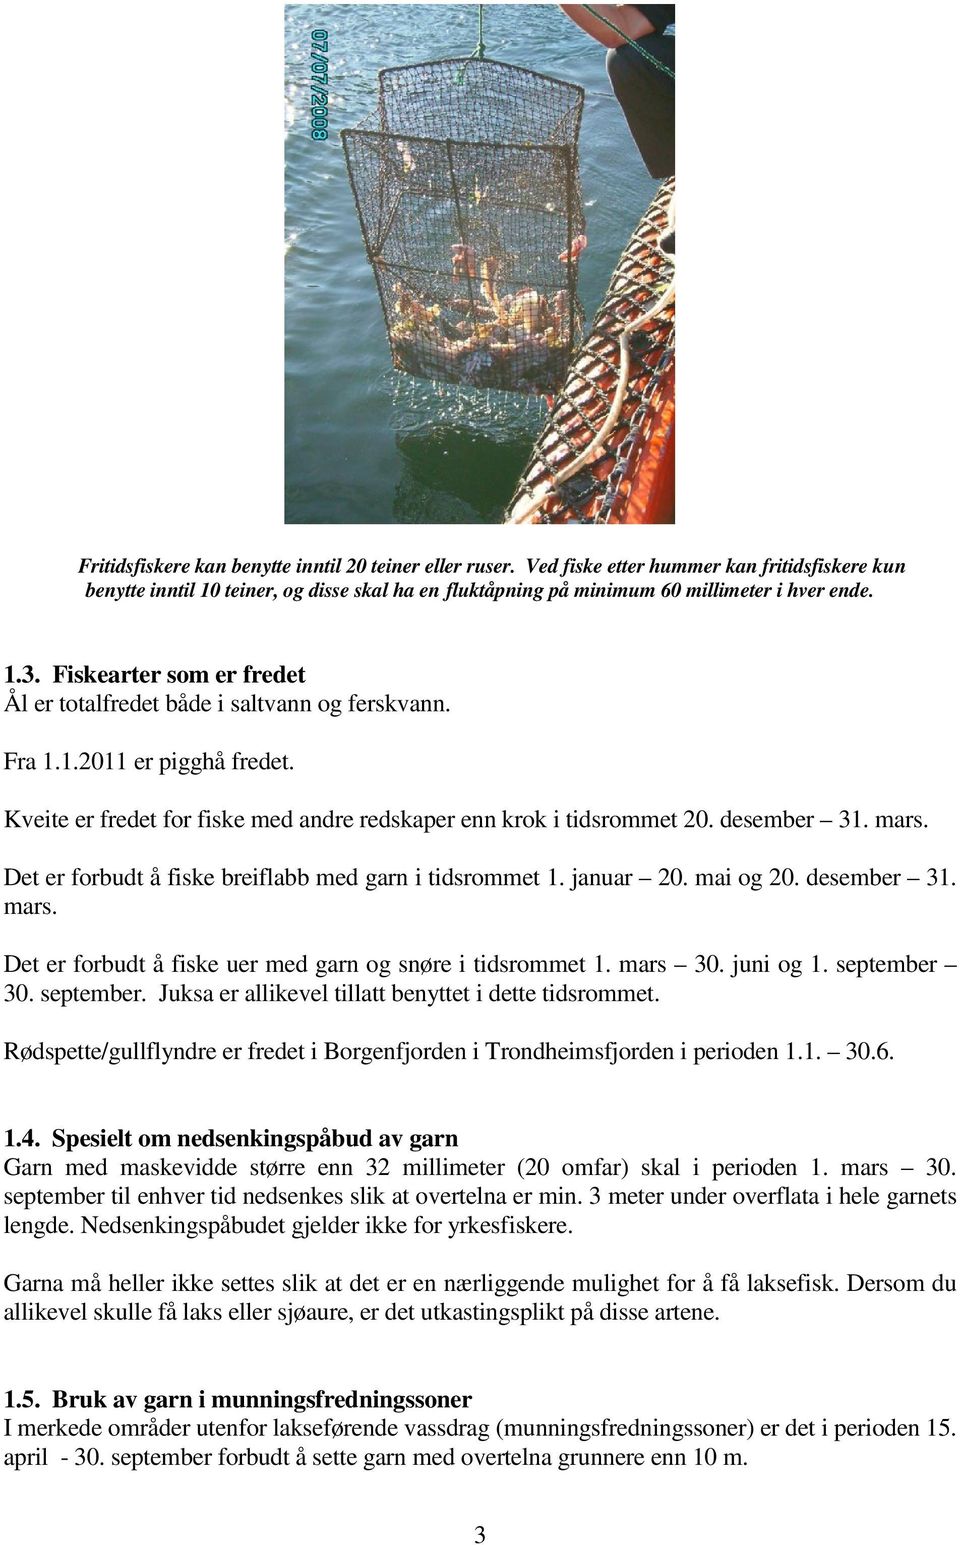 Det er forbudt å fiske breiflabb med garn i tidsrommet 1. januar 20. mai og 20. desember 31. mars. Det er forbudt å fiske uer med garn og snøre i tidsrommet 1. mars 30. juni og 1. september 30.